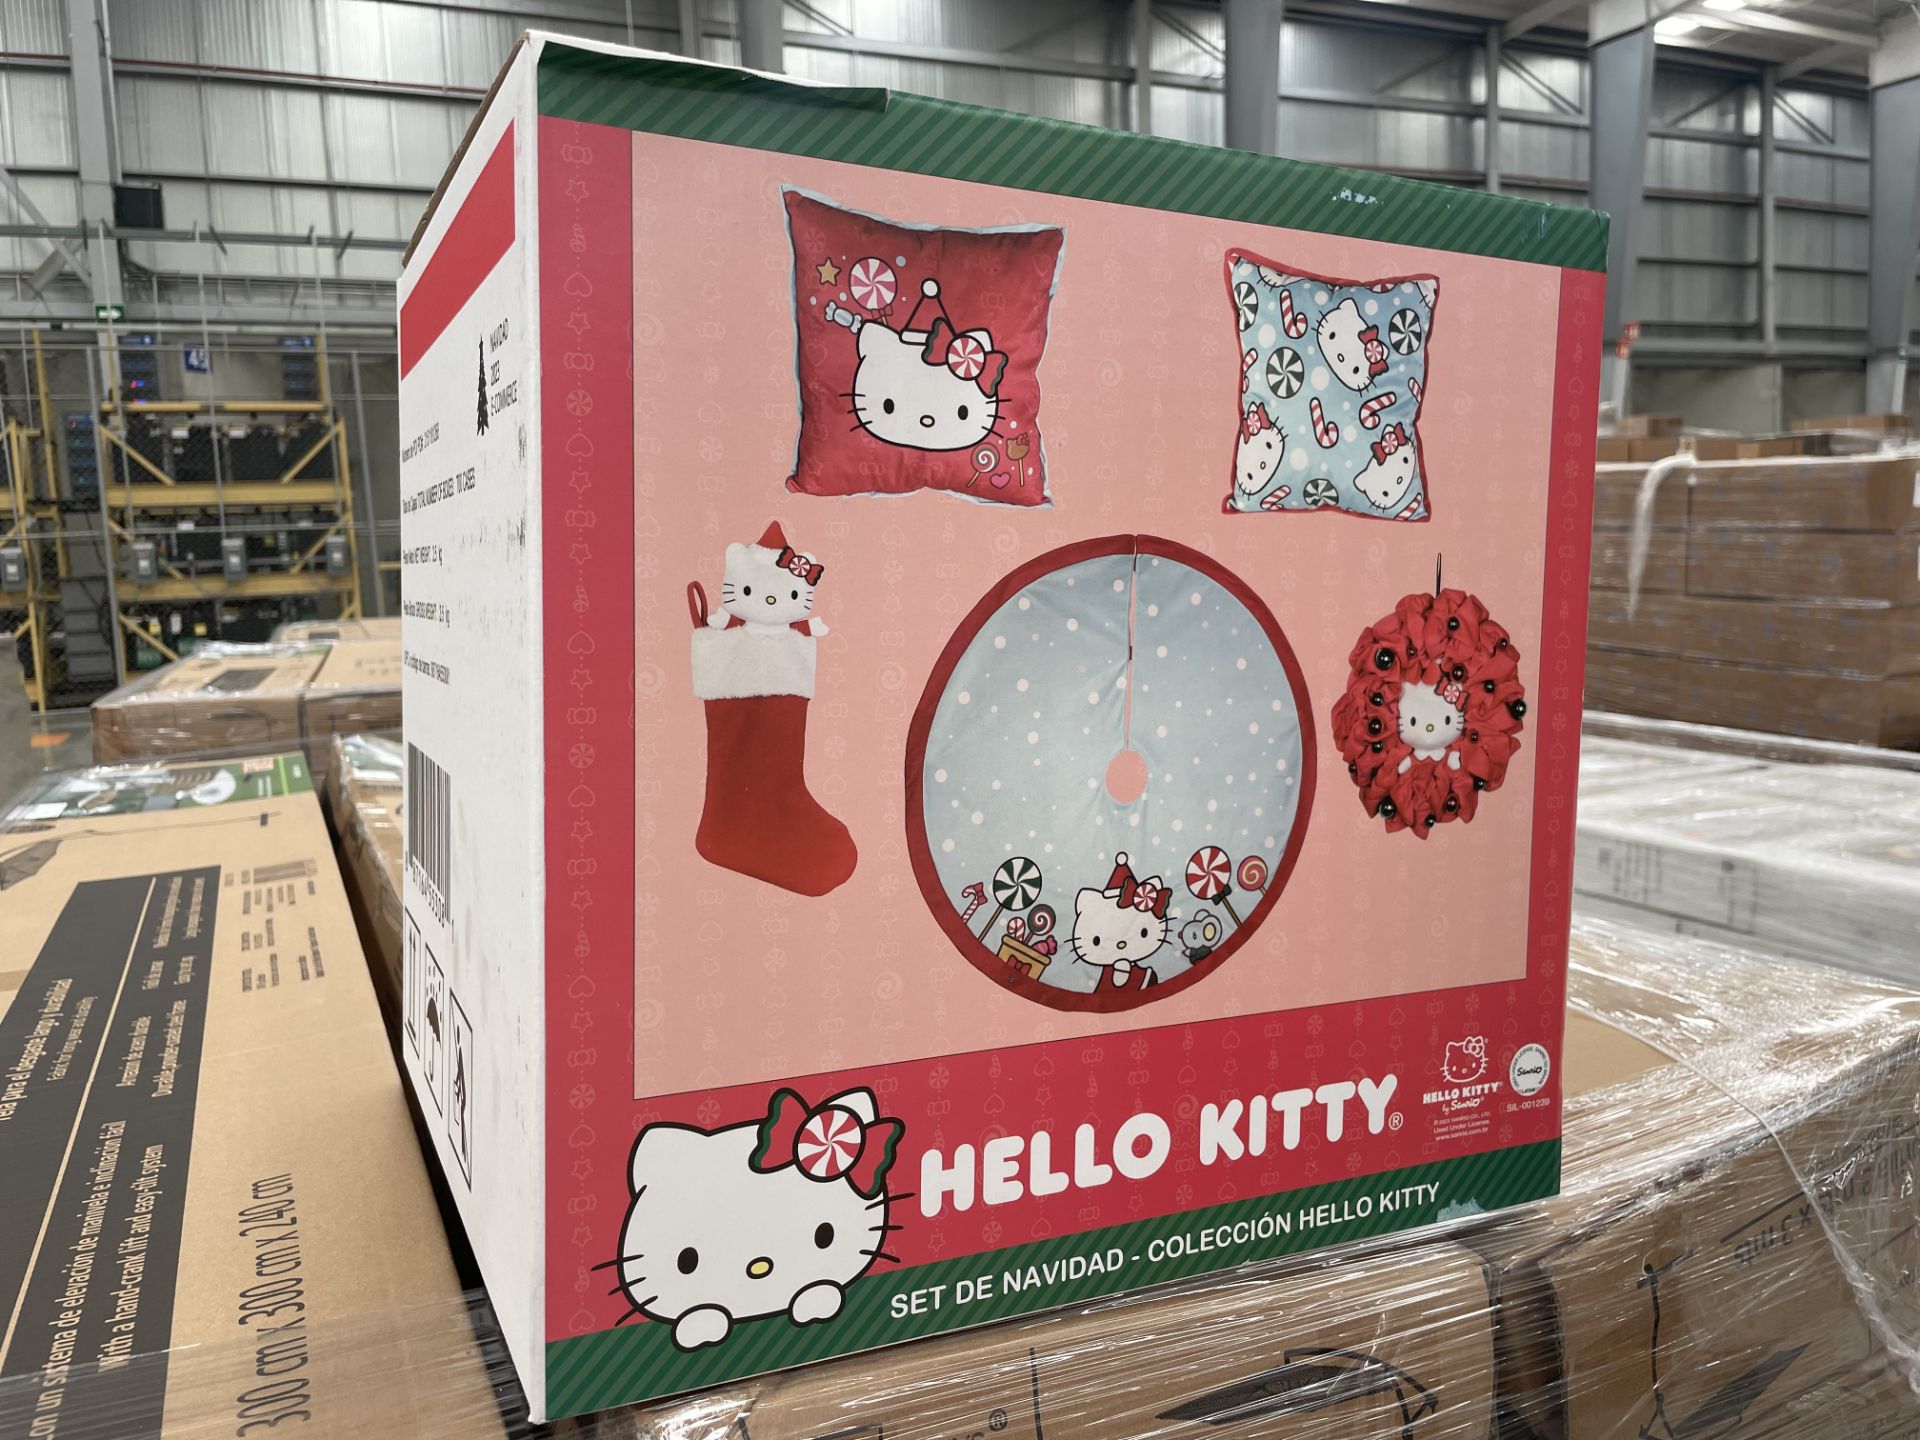 (Nuevo) Lote conformado por 29 set navideños, Colección Hello Kitty, marca SANRIO, incluye 2 almoha - Image 3 of 4